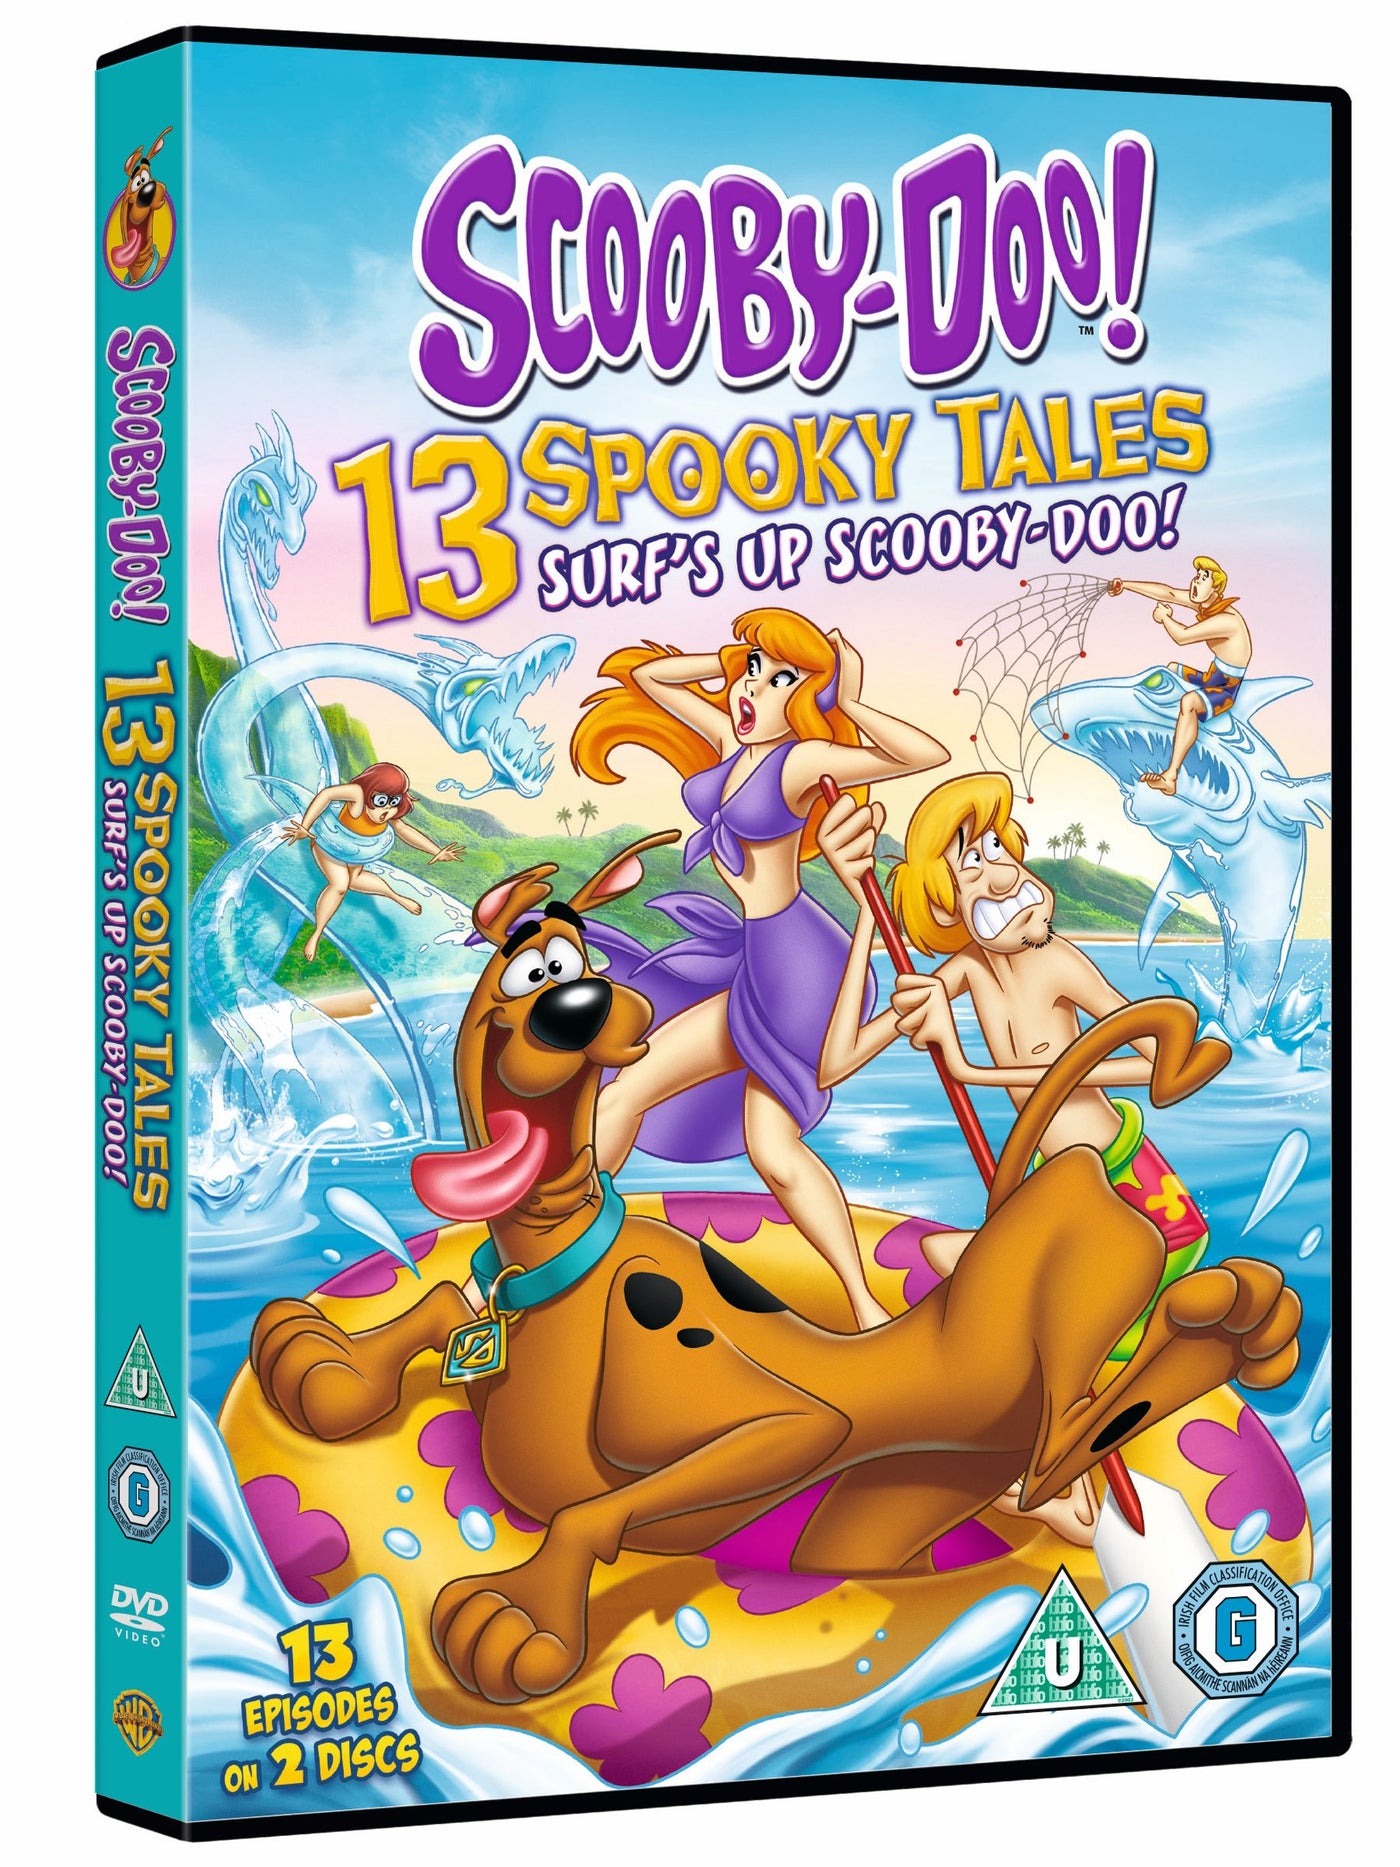 Scooby-Doo: Surf's Up Scooby-Doo! (DVD)